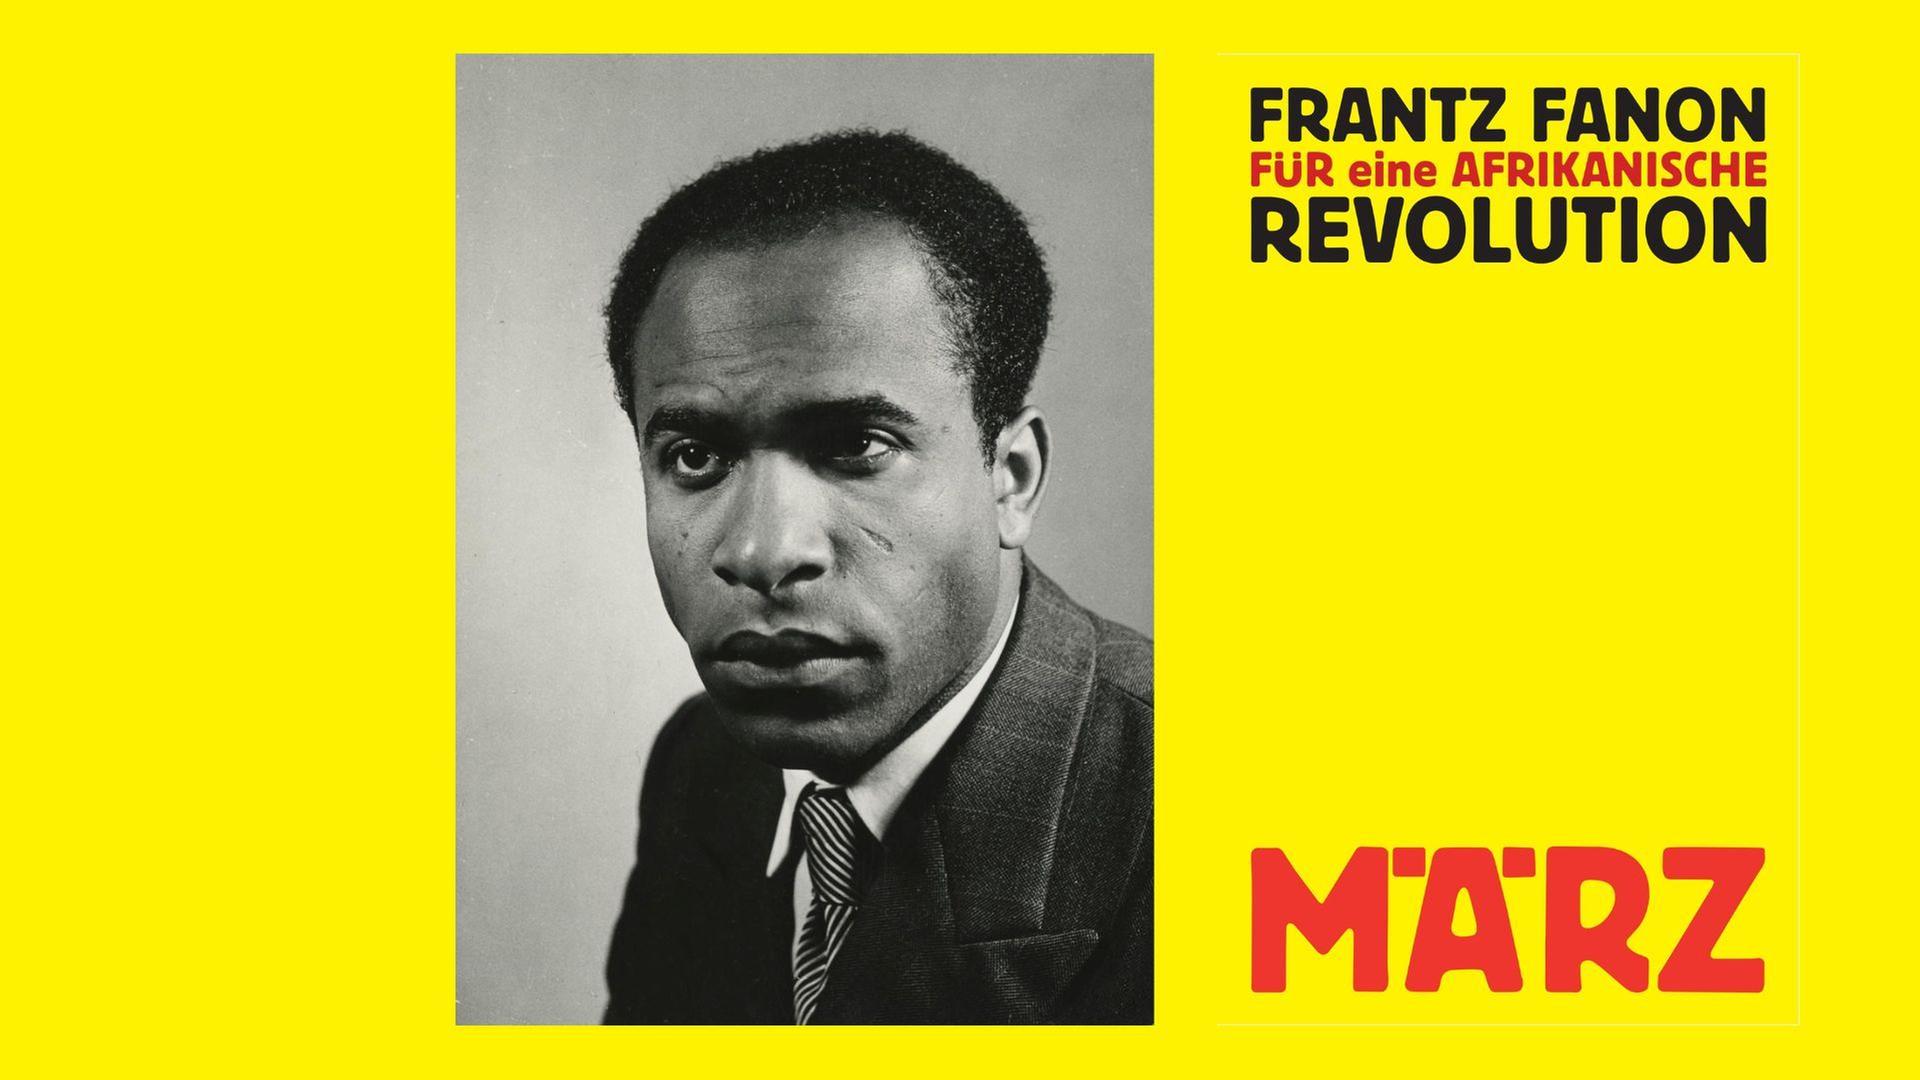 Frantz Fanon: "Für eine afrikanische Revolution"